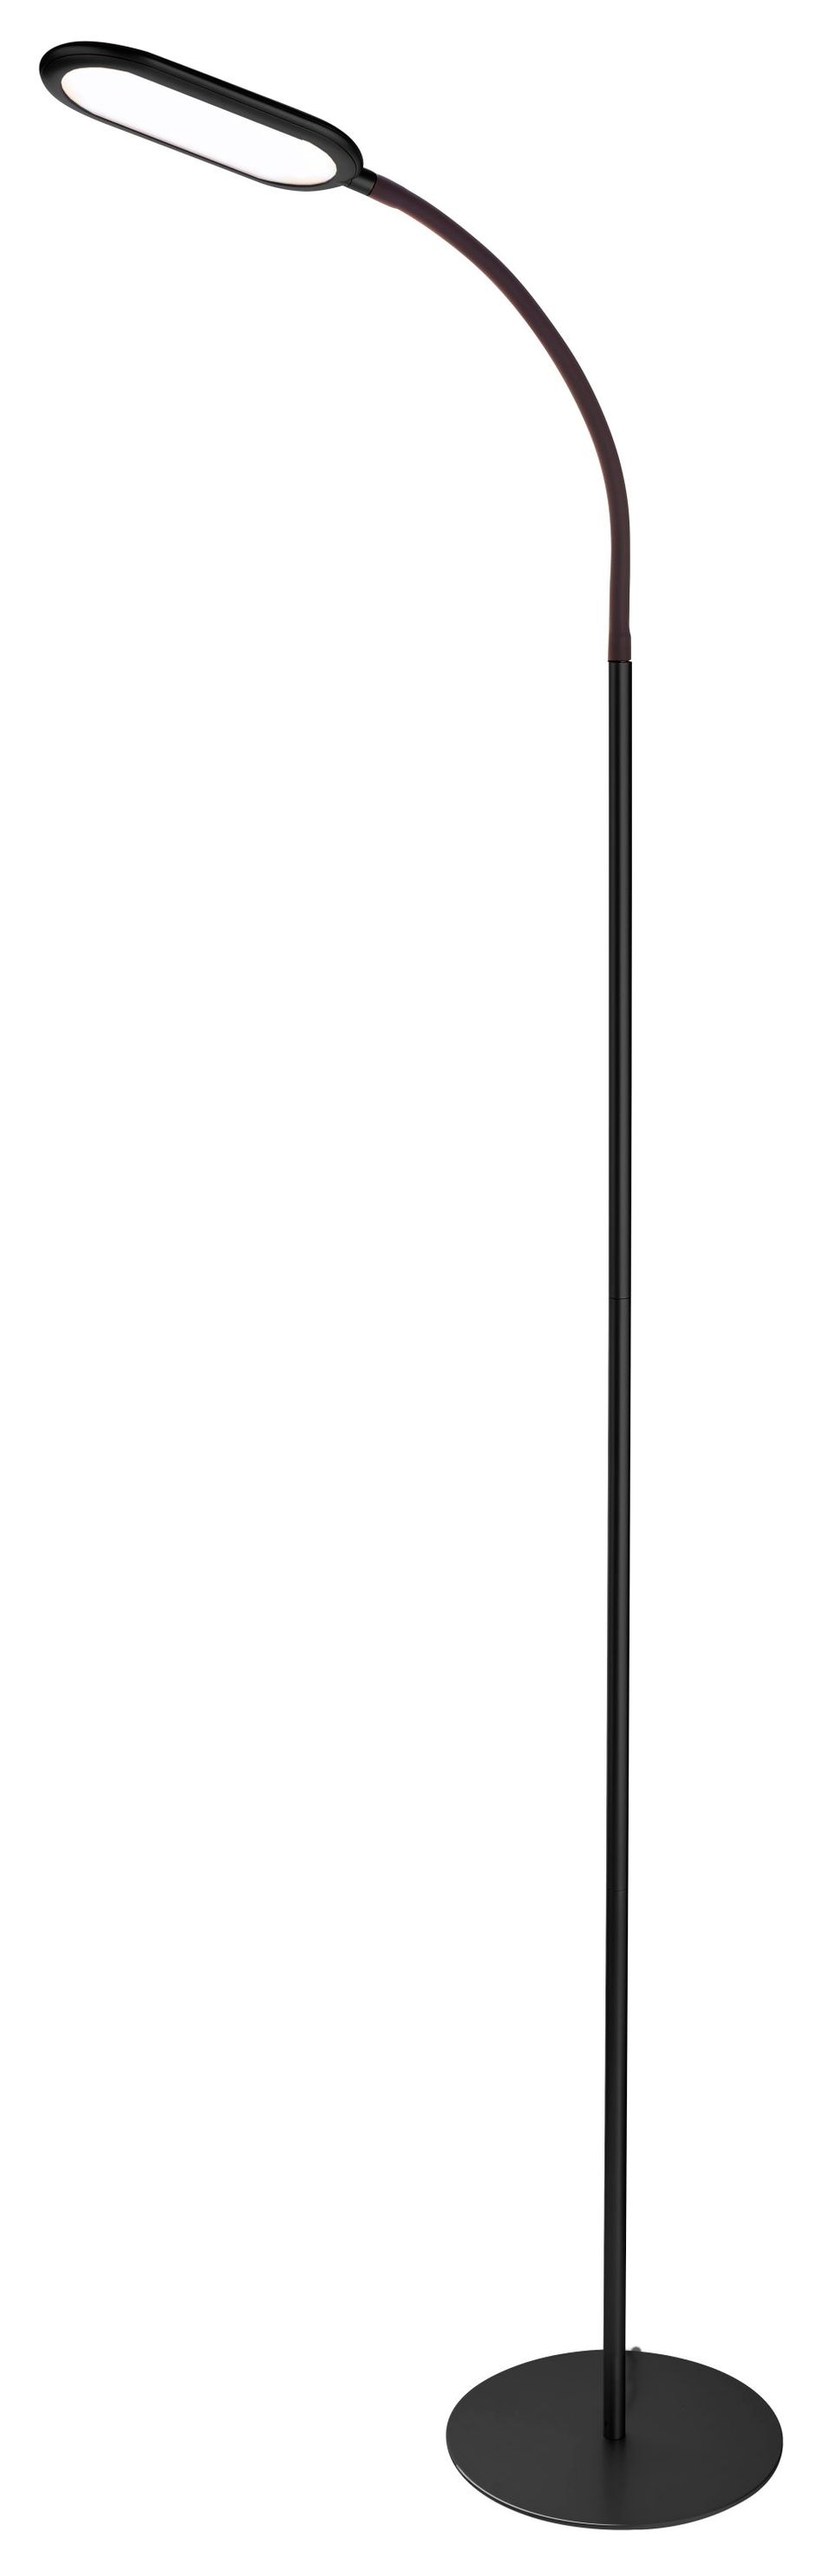 Taghell Tageslicht-Standleuchte Slimline Farbe: schwarz | Weltbild.de